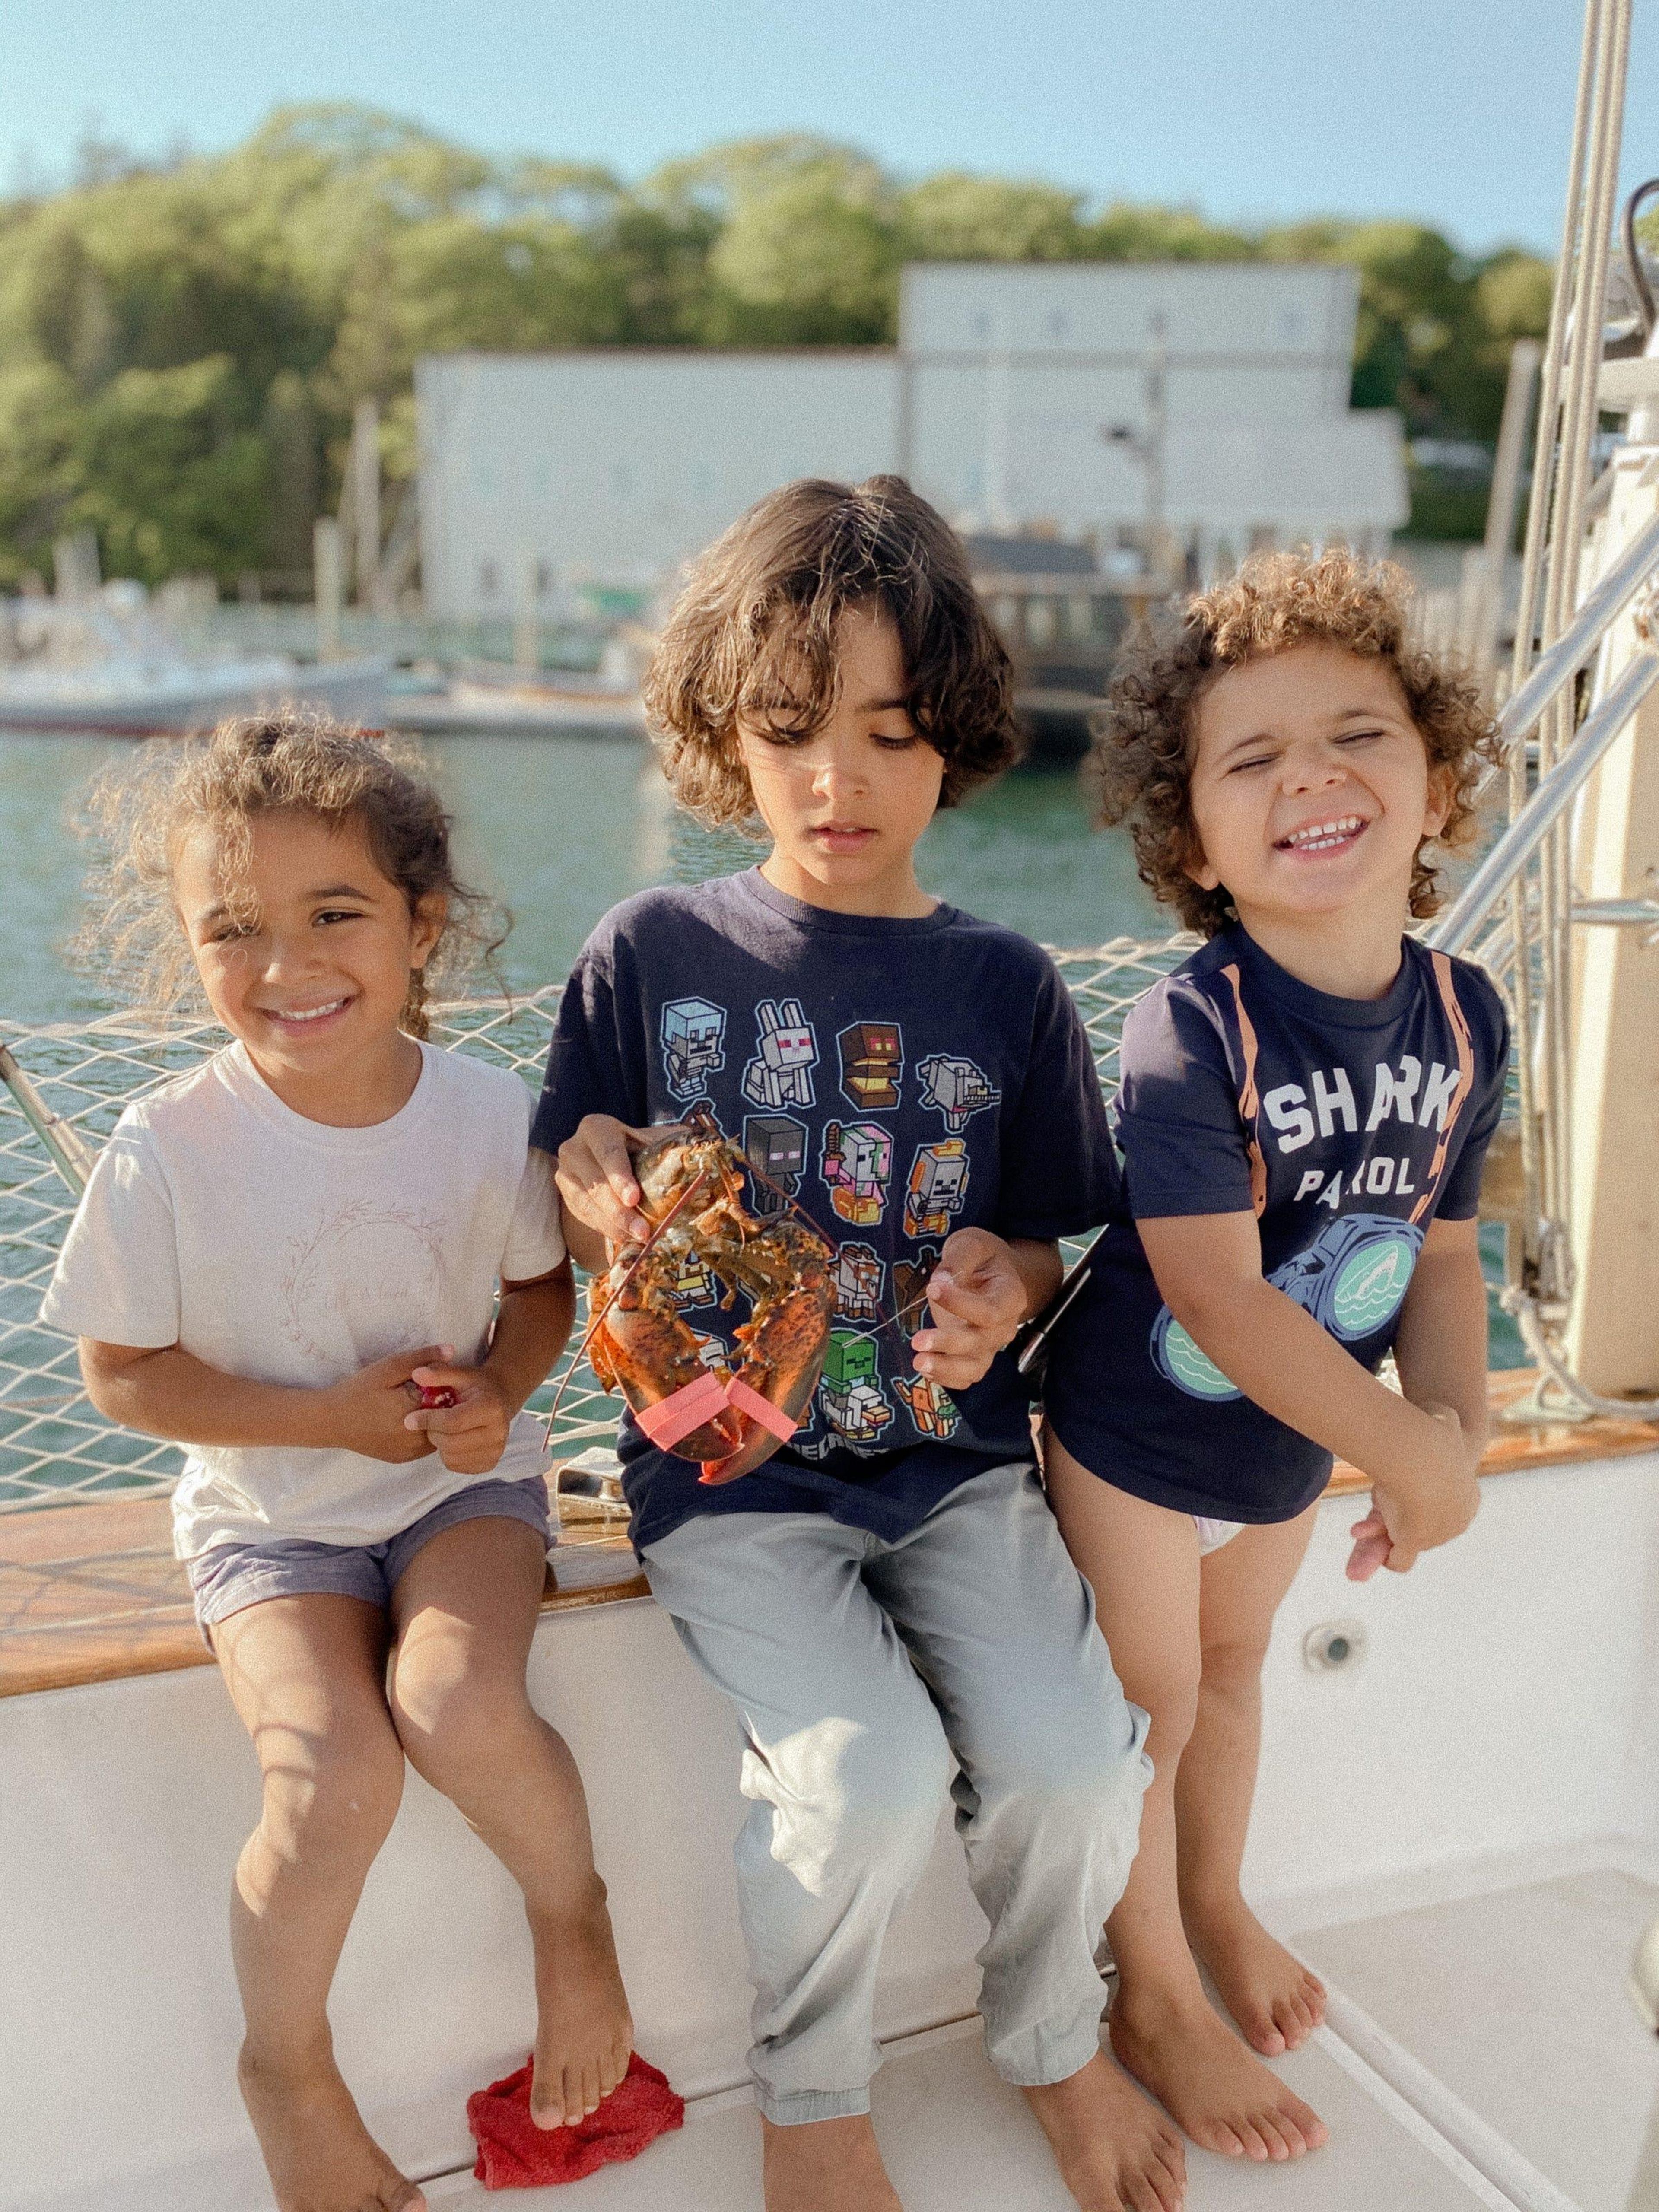 Samantha y Aaron le dijeron a 'Business Insider' que a sus hijos les encanta la vida en el navío y que están ansiosos por ver lo que les depara el día siguiente.